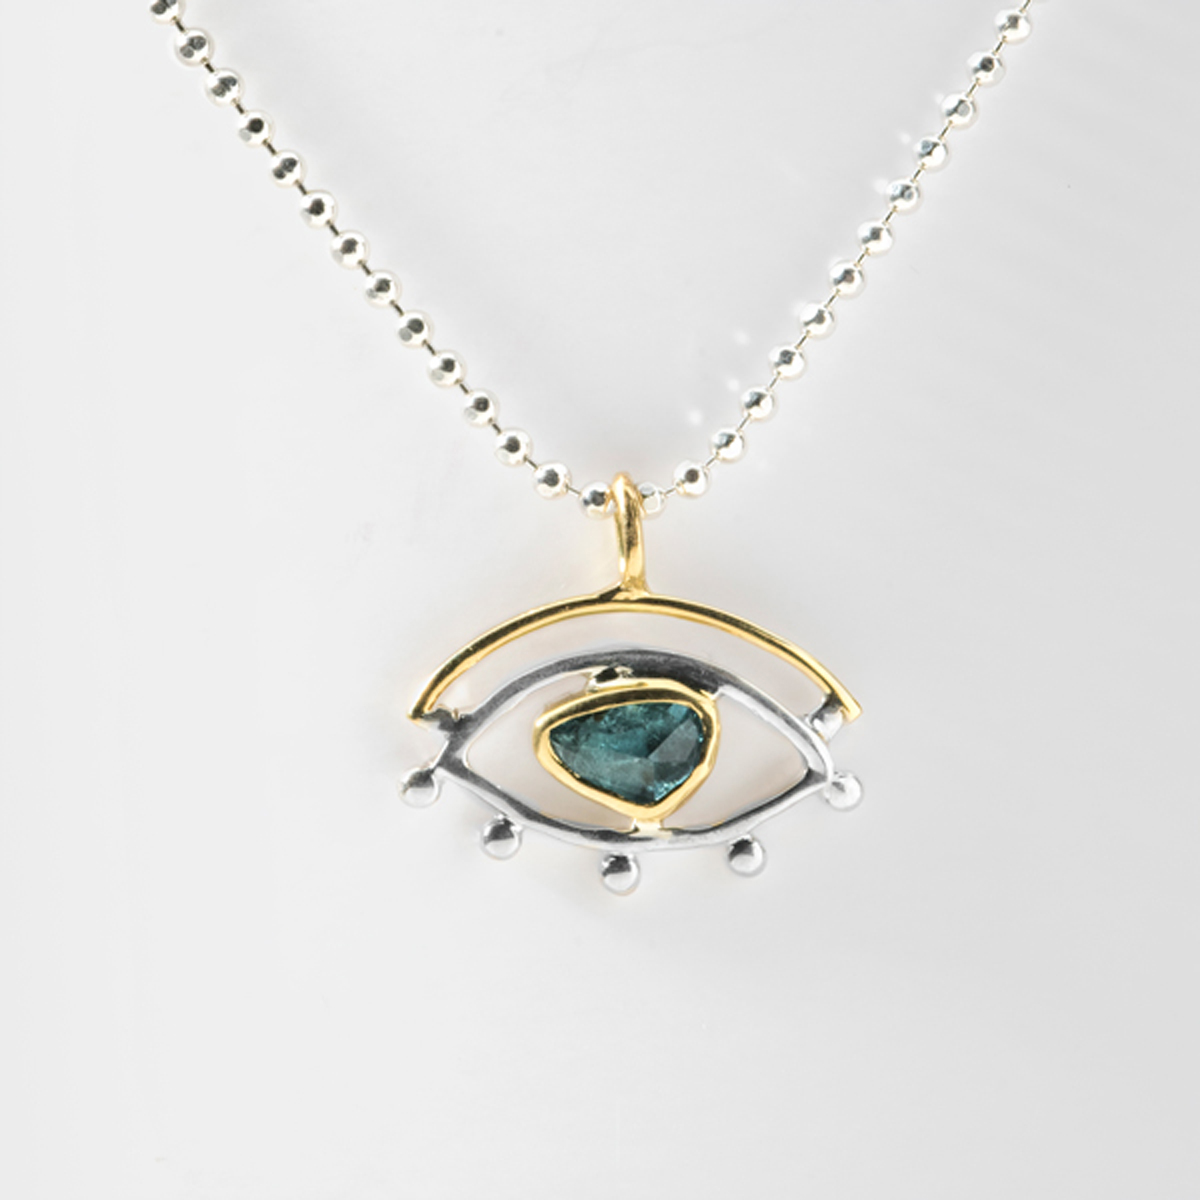 Blue Topaz, Gold & Silver eye pendant